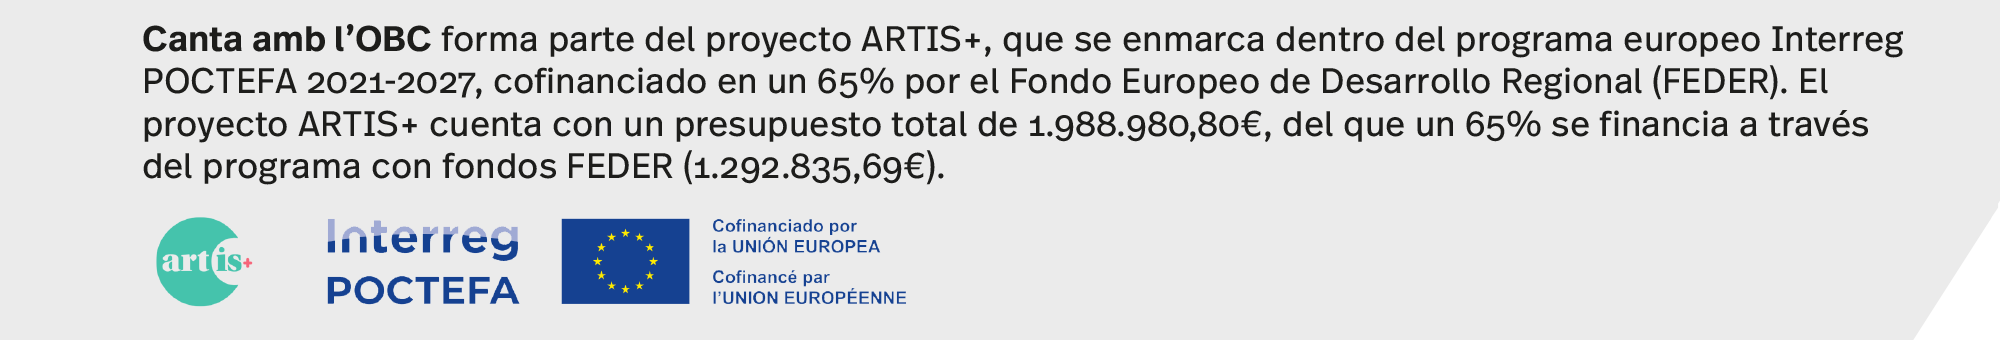 Canta amb l’OBC forma parte del proyecto ARTIS+, que se enmarca dentro del programa europeo Interreg POCTEFA 2021-2027, cofinanciado en un 65% por el Fondo Europeo de Desarrollo Regional (FEDER). El proyecto ARTIS+ cuenta con un presupuesto total de 1.988.980,80€, del que un 65% se financia a través del programa con fondos FEDER (1.292.835,69€). 